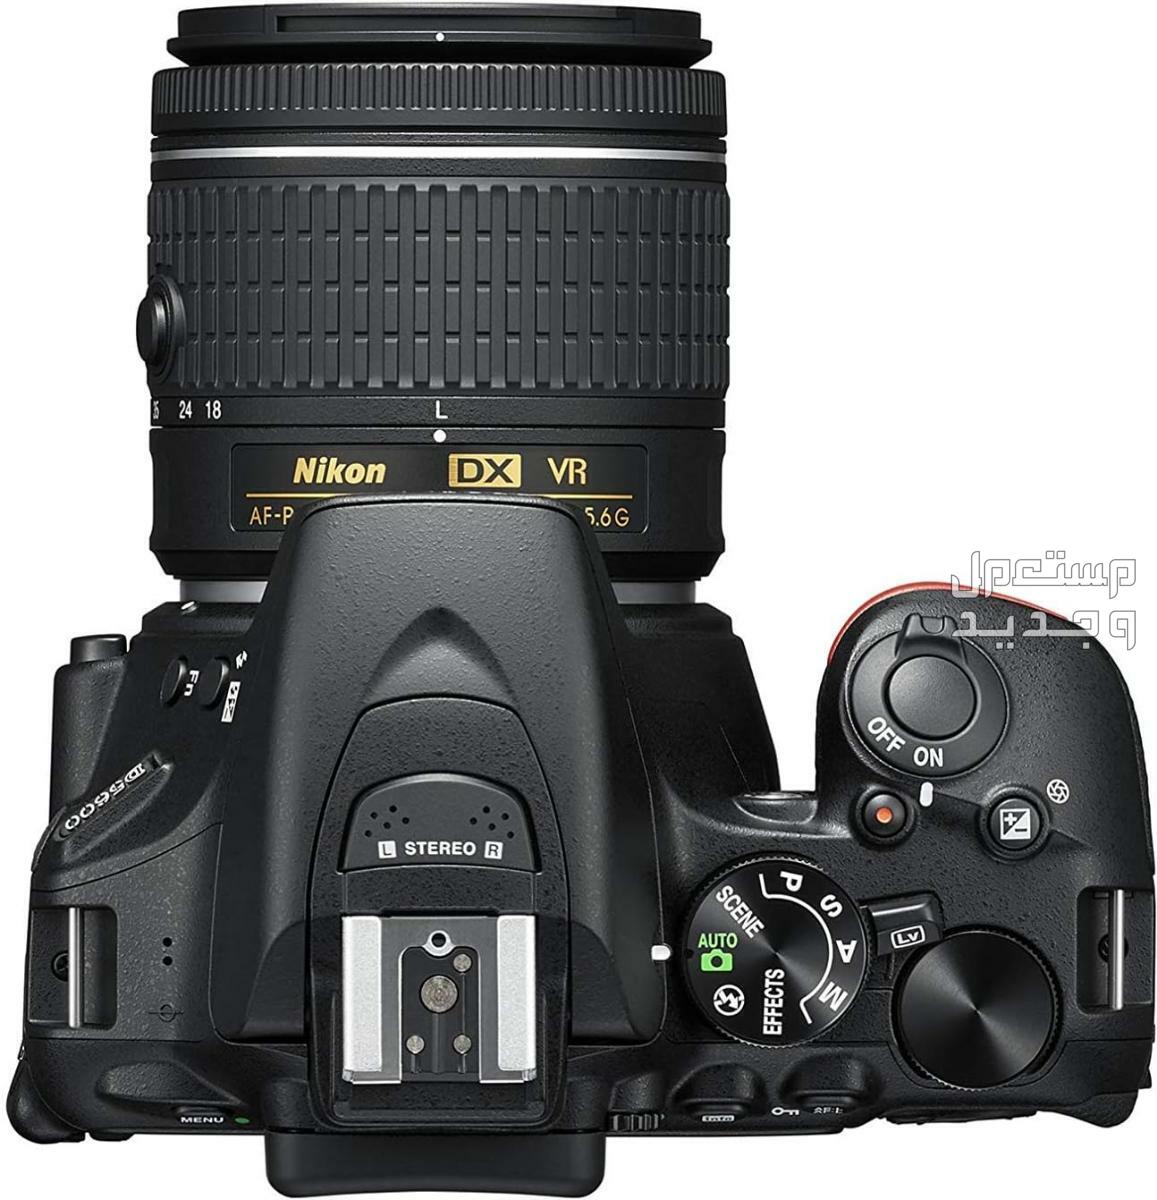 10 كاميرات تصوير ماركات عالمية بأسعار رخيصة في سوريا مميزات كاميرا Nikon D5600